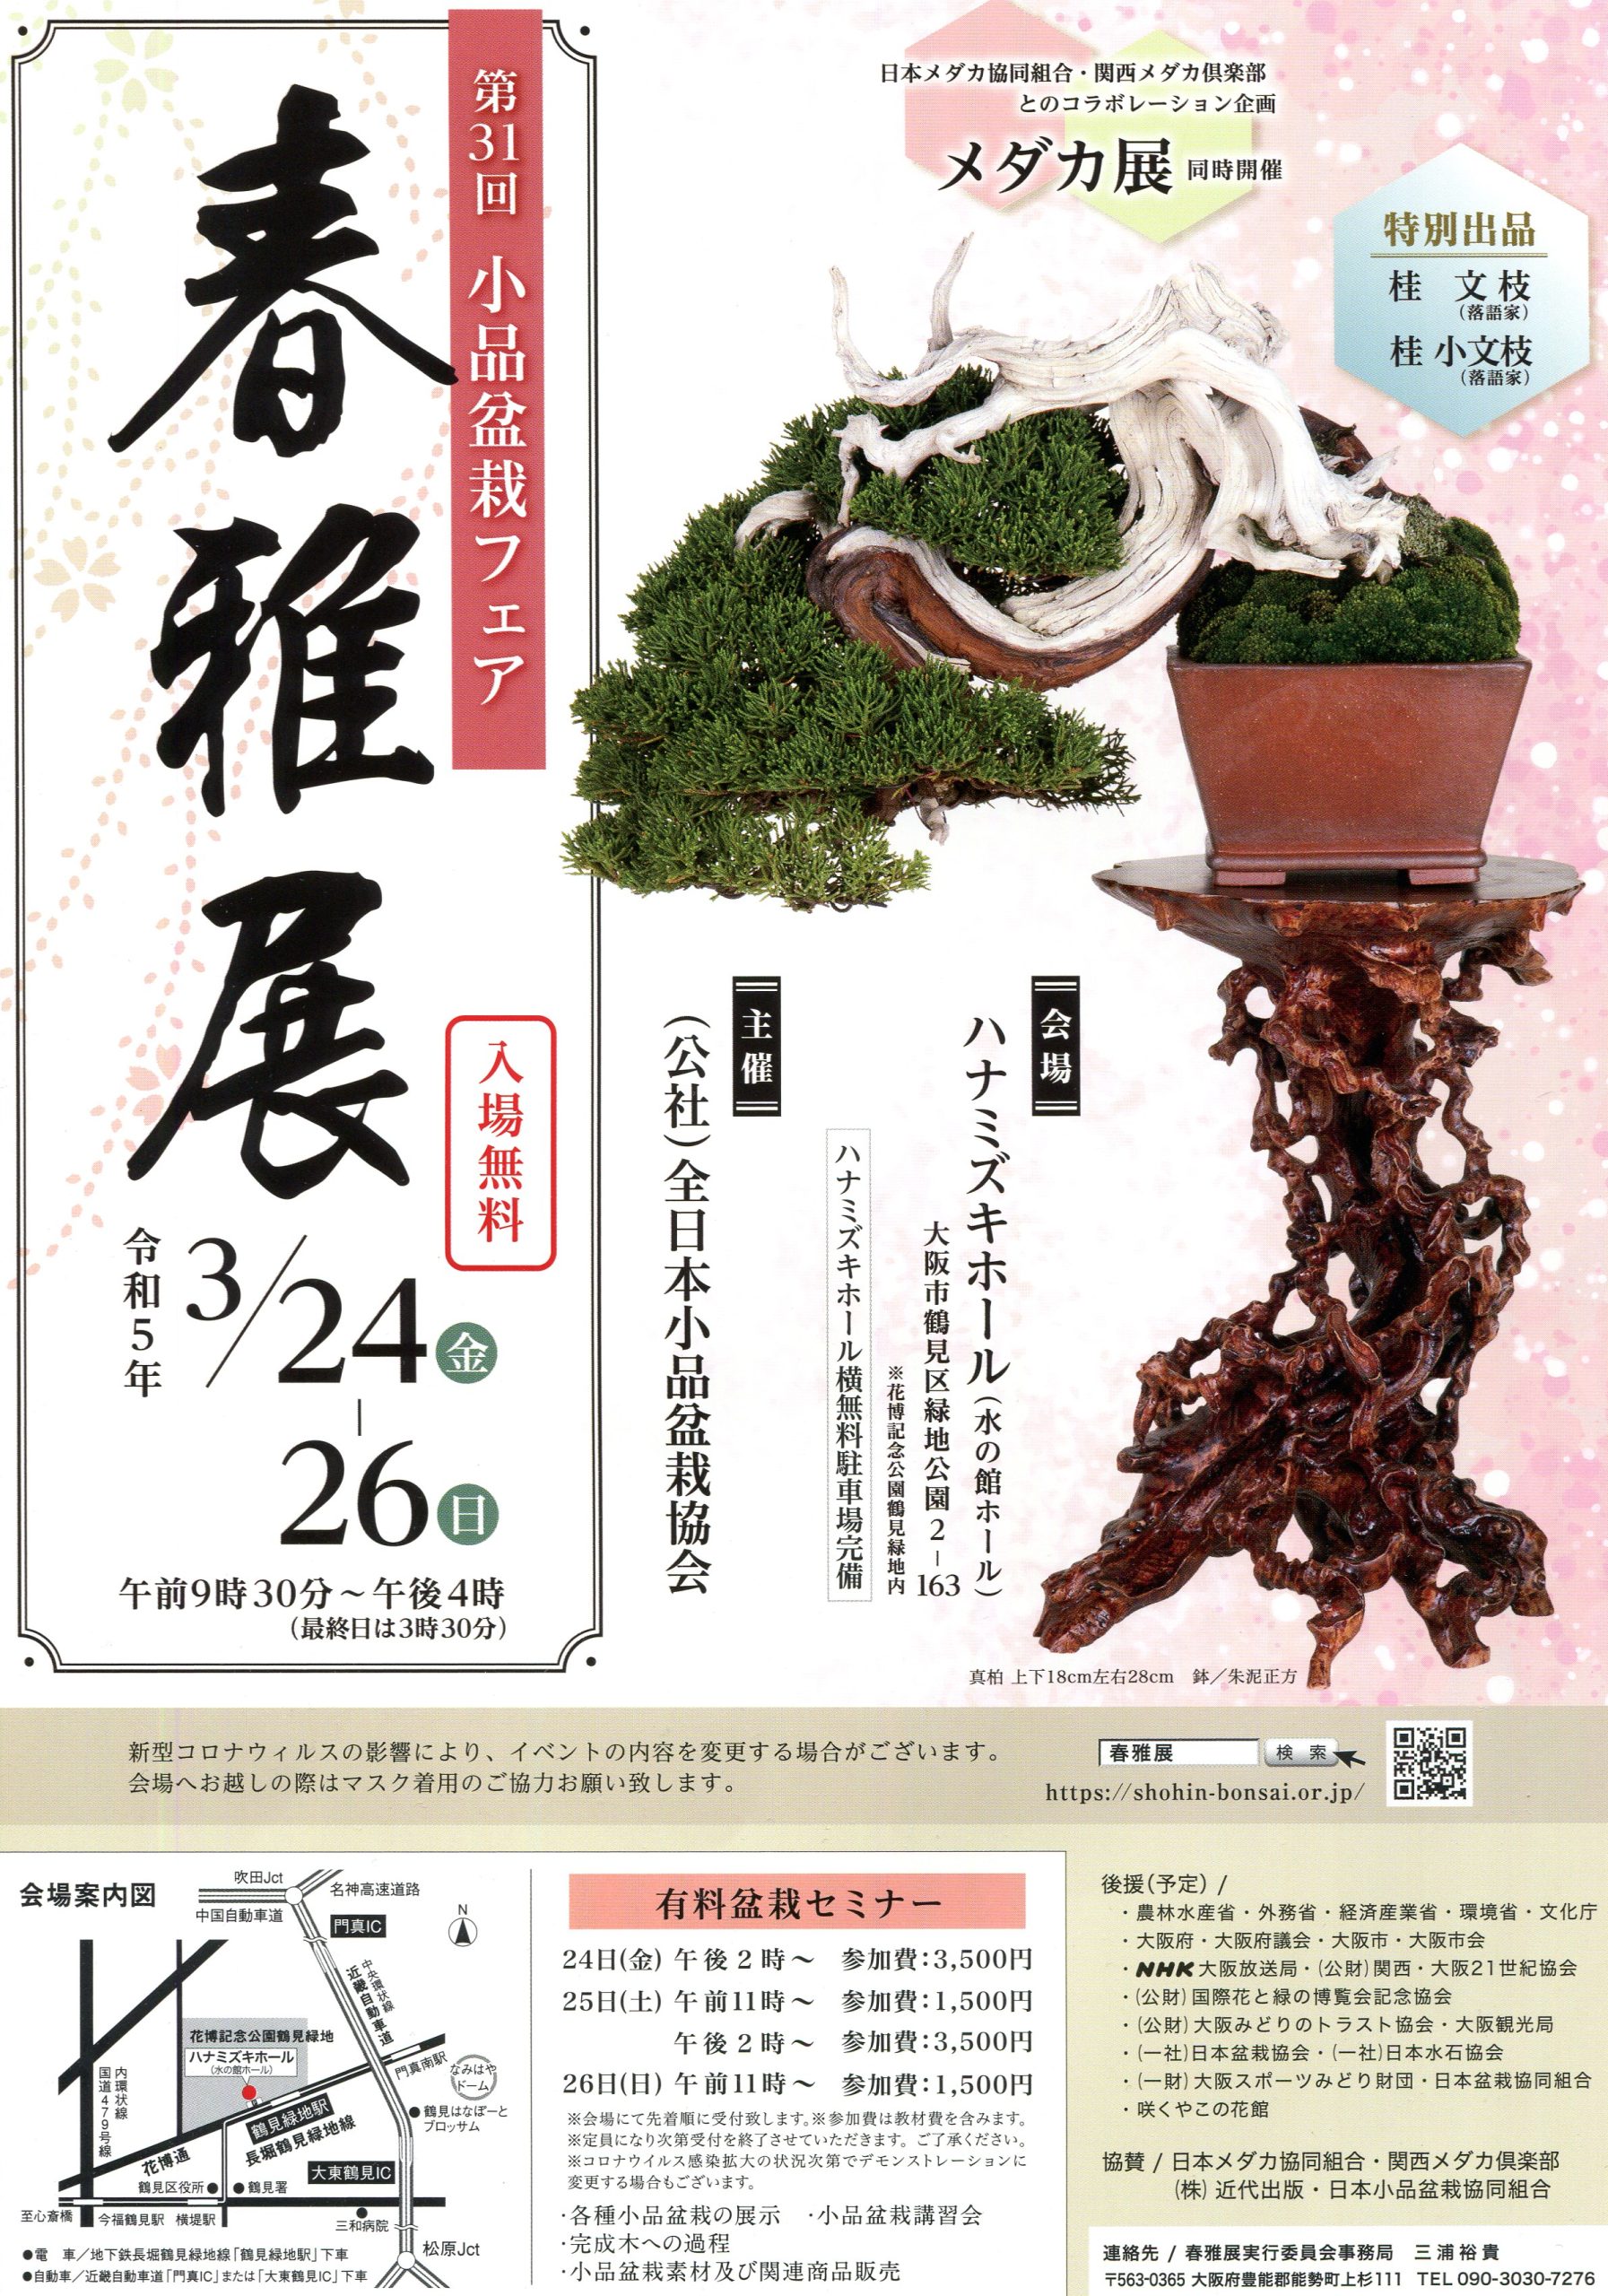 第31回春雅展 開催案内 - 公益社団法人全日本小品盆栽協会